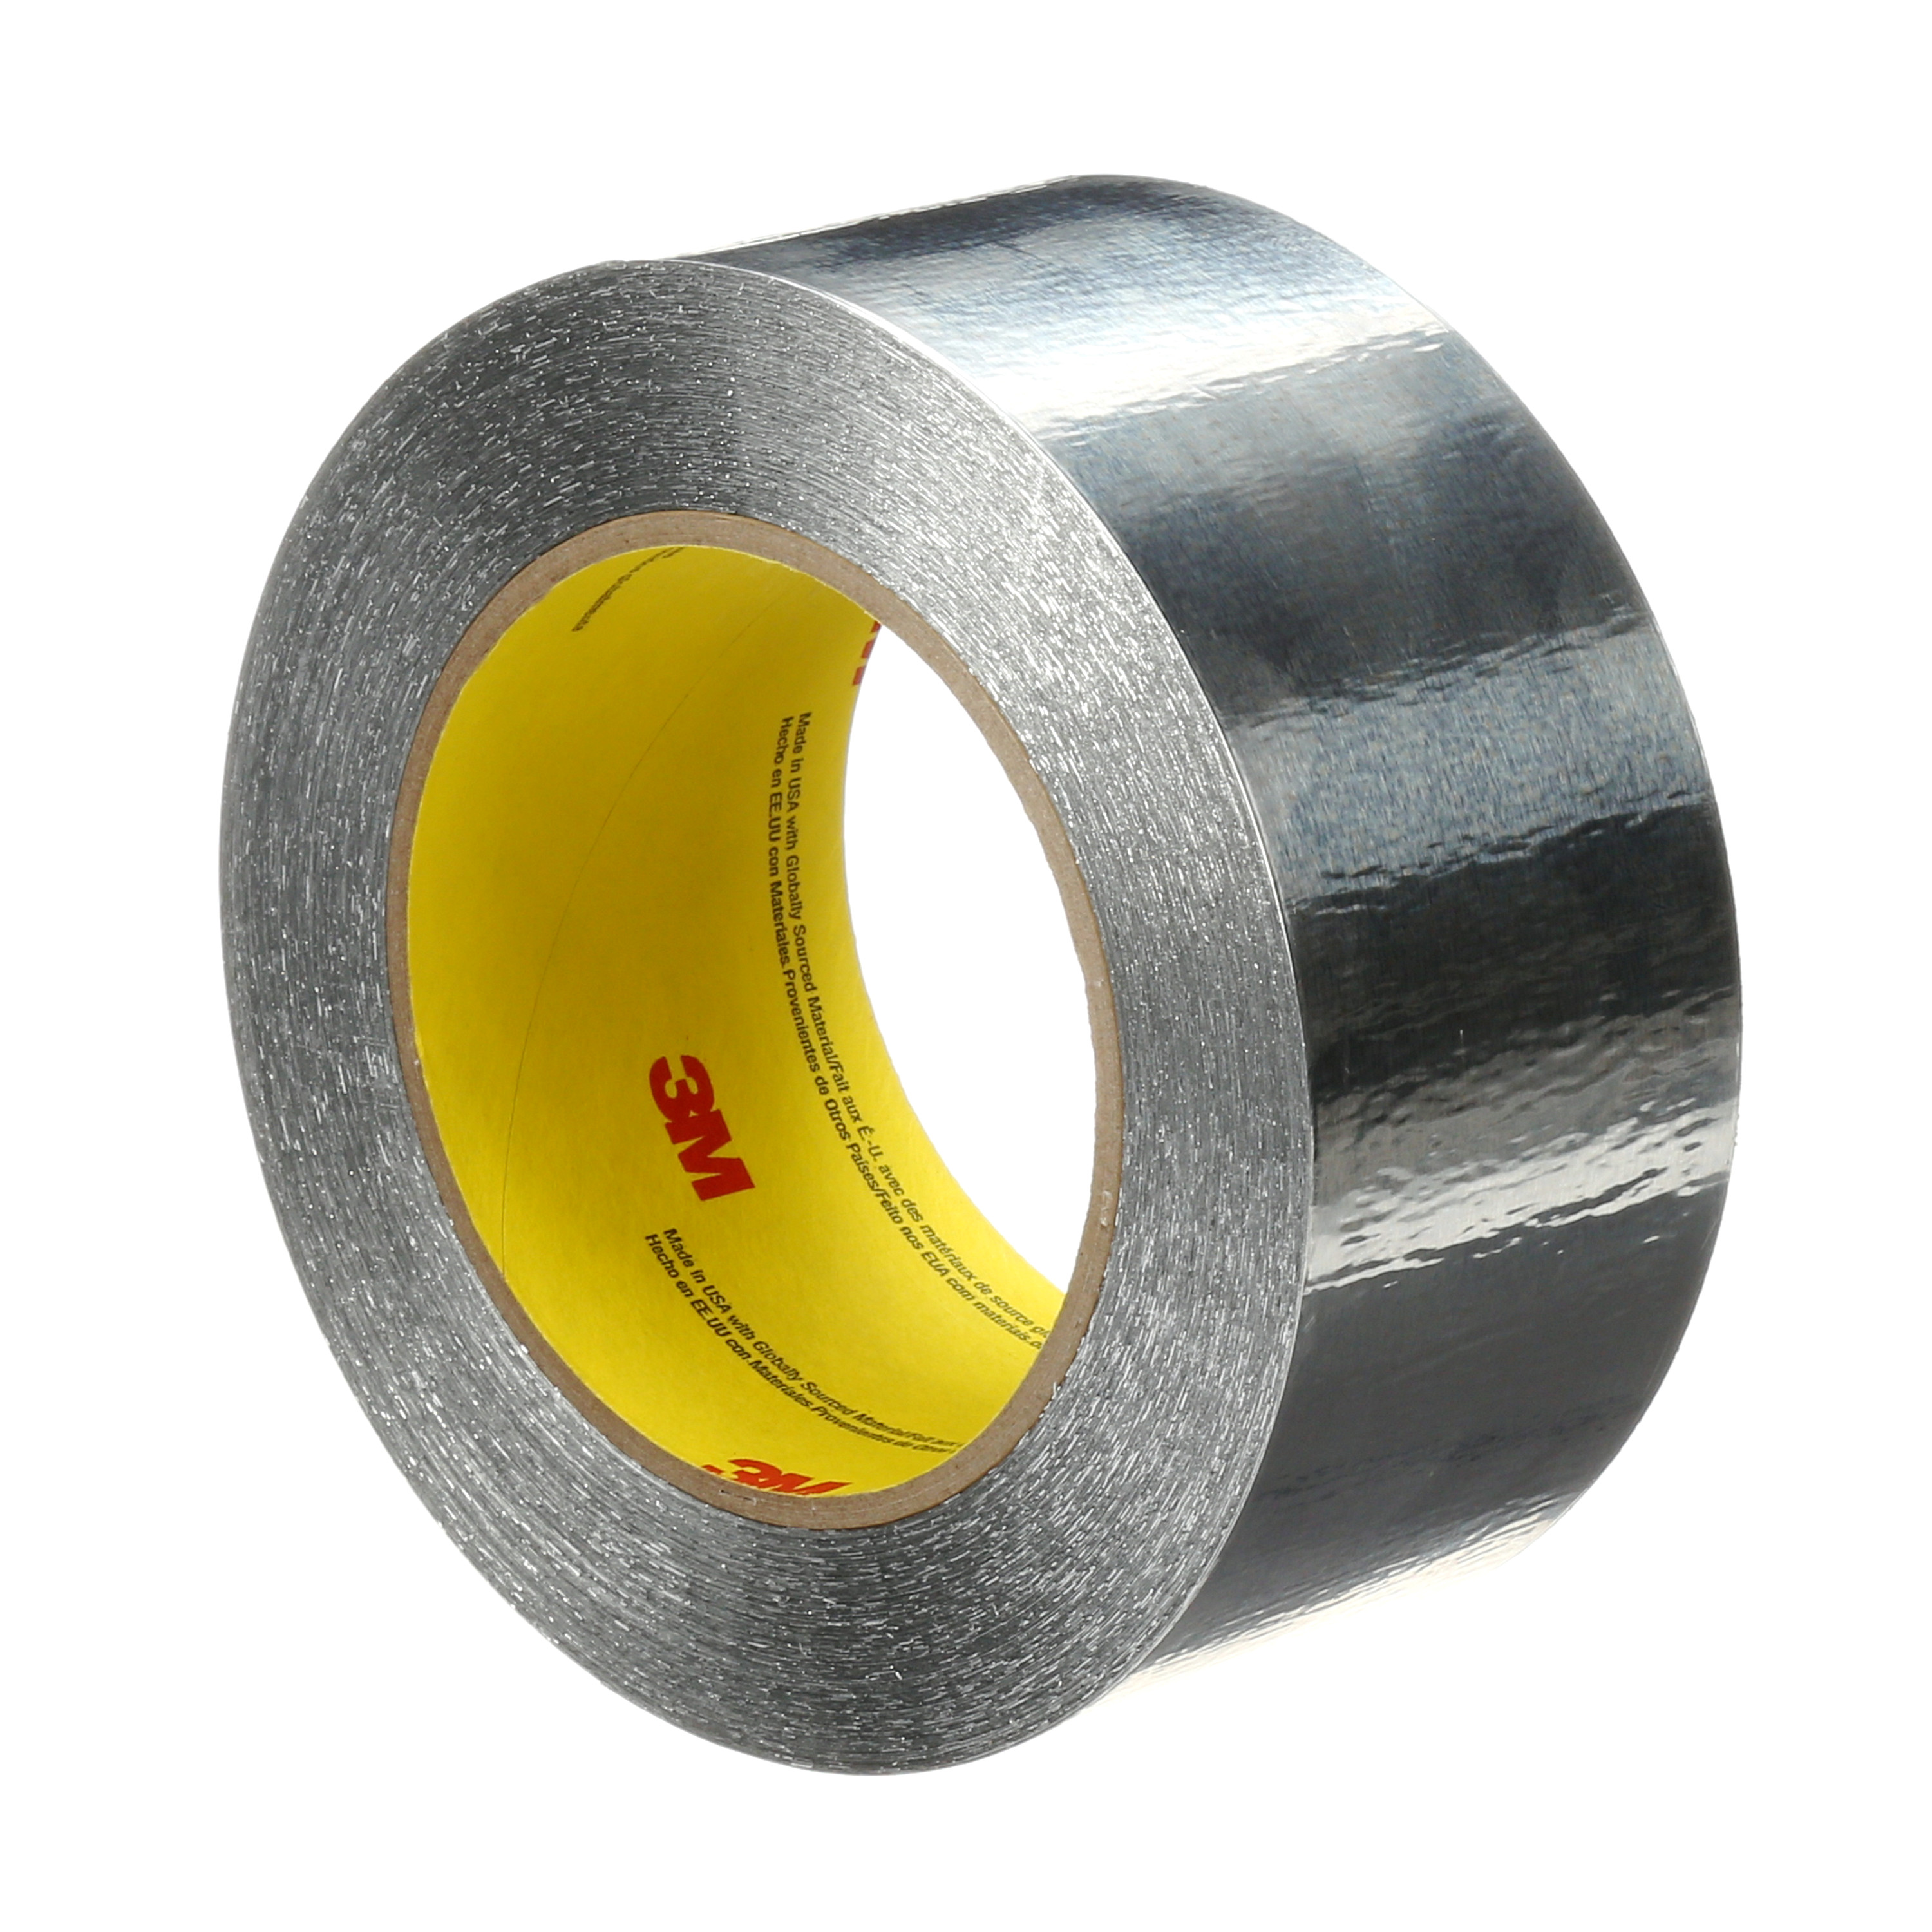 3M™ Aluminum Foil Tape 425, Silver, 2 1/2 in x 60 yd, 4.6 mil, 12 rolls
per case